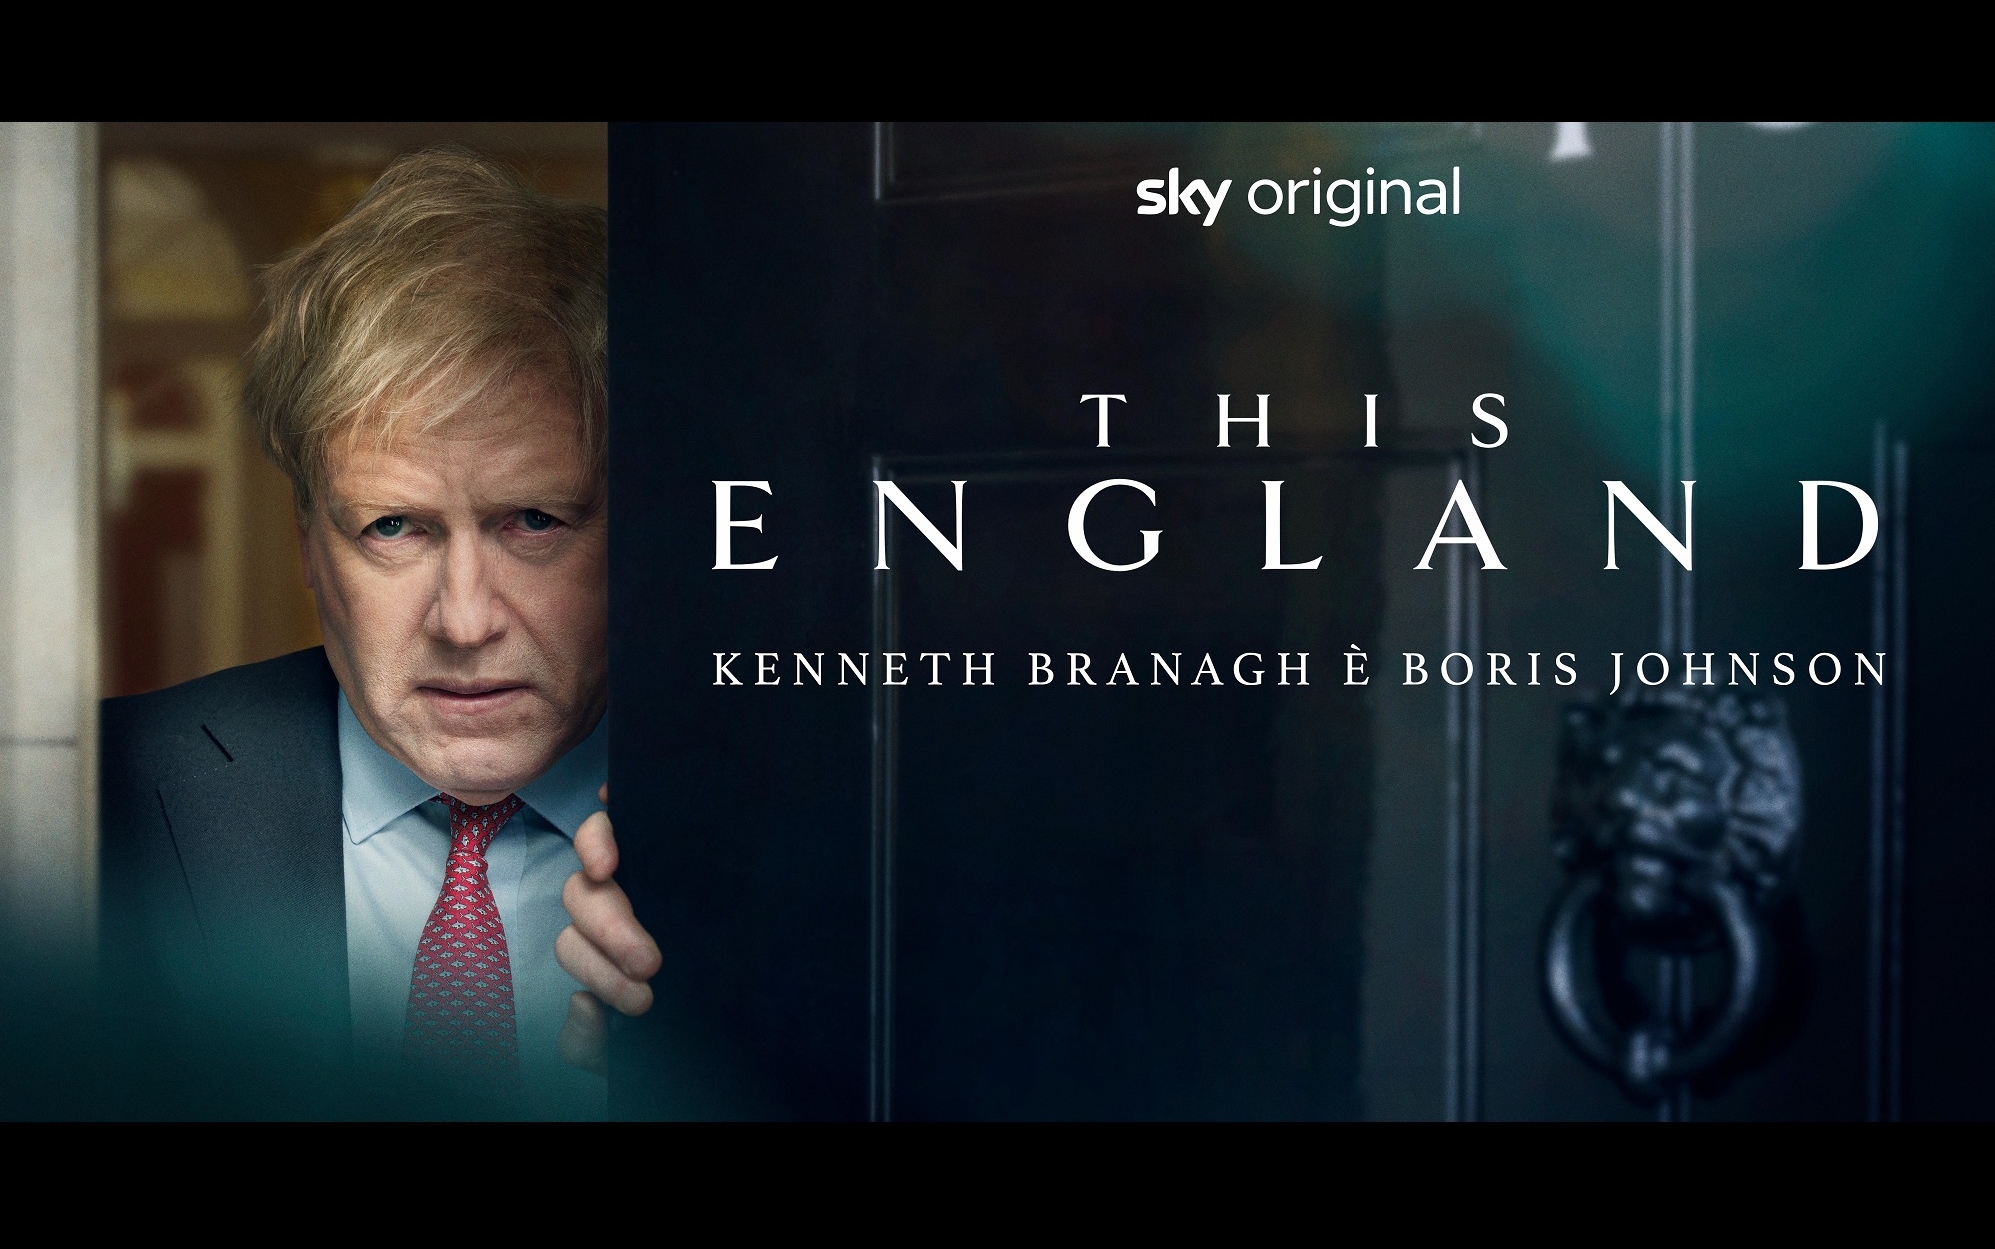 Serie tv This England, stagione 1: Kenneth Branagh interpreta Boris Johnson, trama in dettaglio